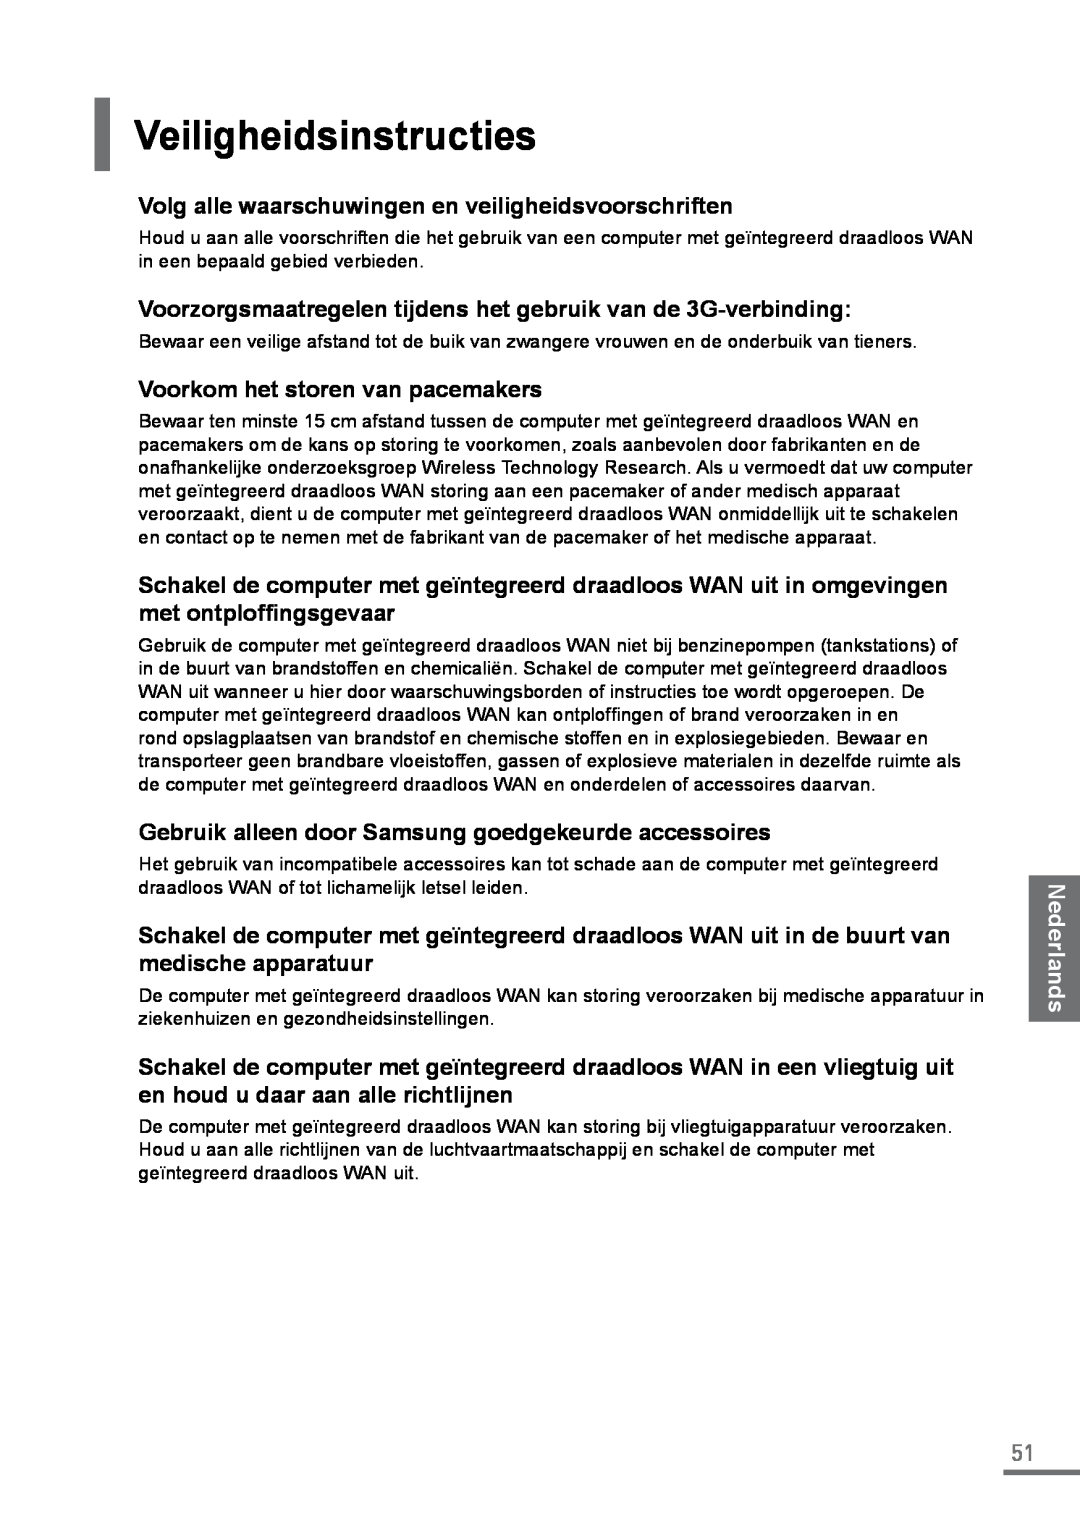 Samsung XE500C21-HZ2IT manual Veiligheidsinstructies, Volg alle waarschuwingen en veiligheidsvoorschriften, Nederlands 